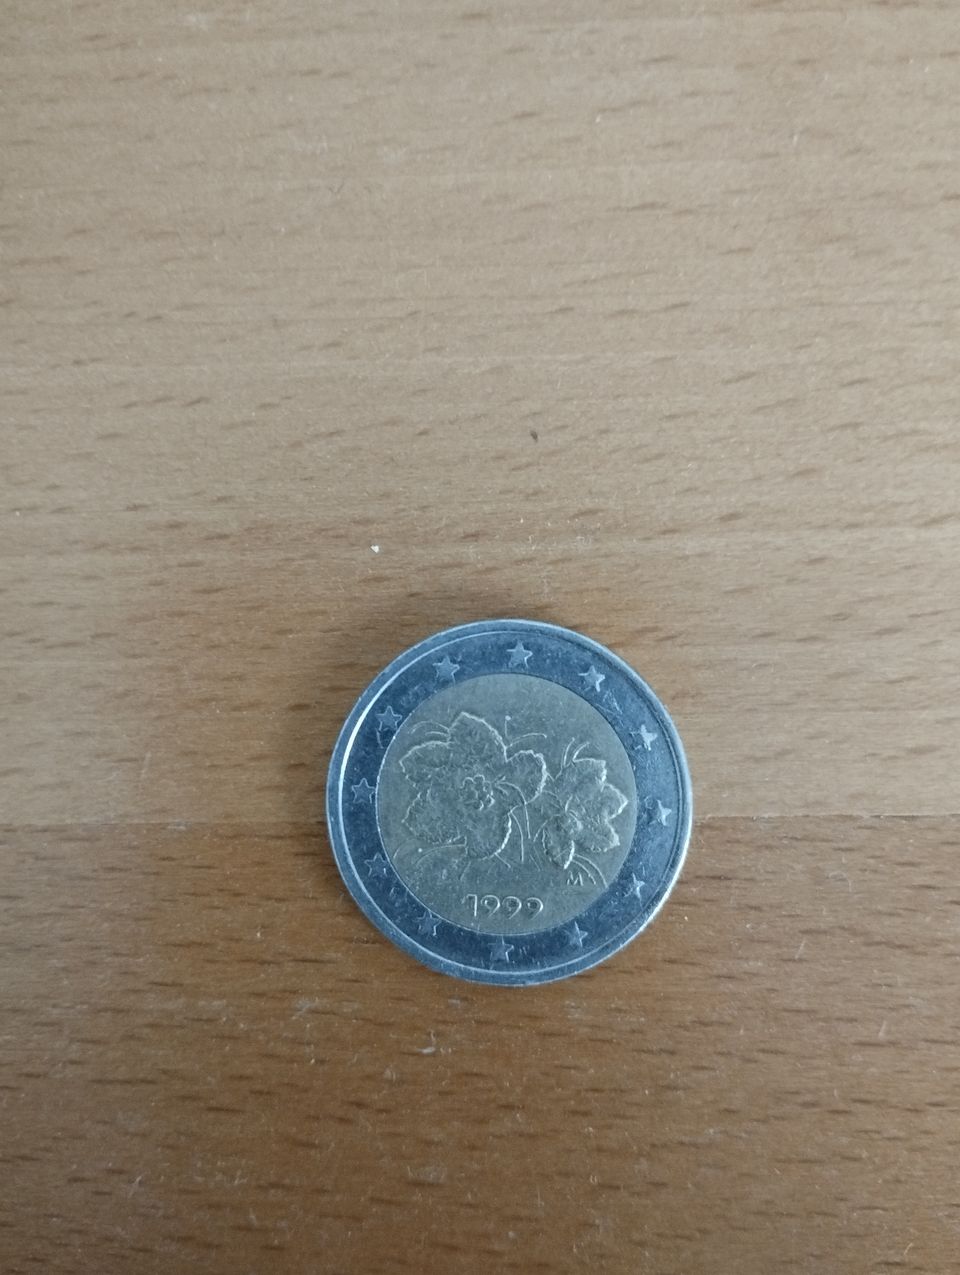 2€ Finland Coin 1999